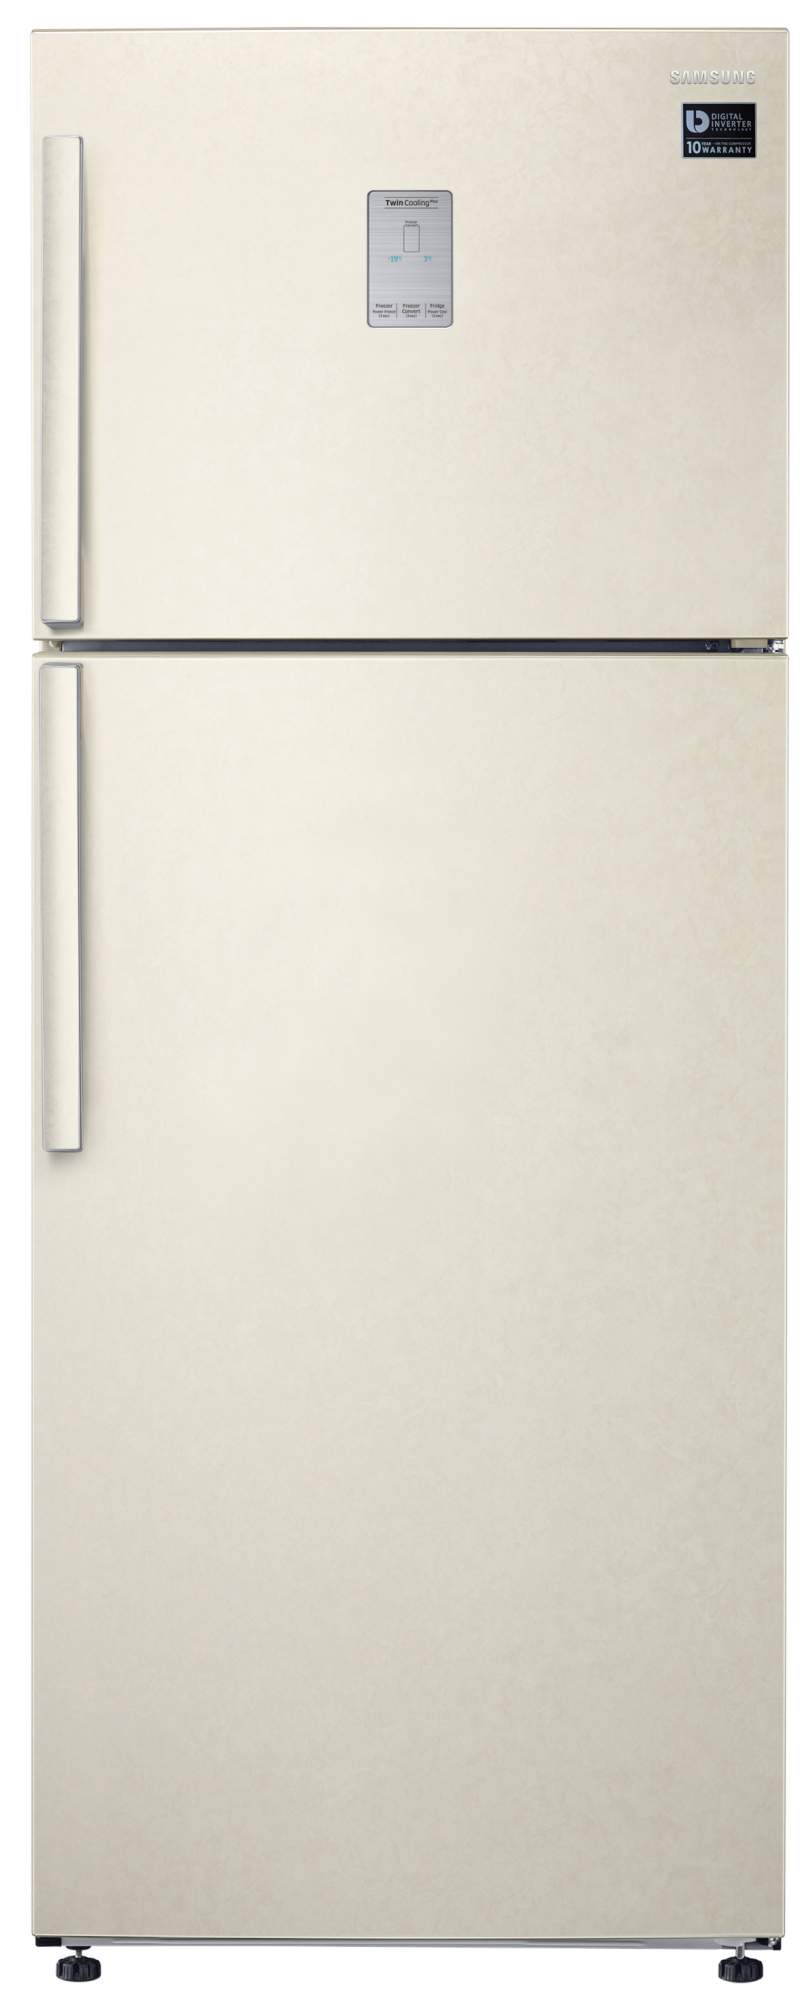 Холодильник бежевый no frost. Холодильник LG GC-b569pecm бежевый. Холодильник Samsung RT-62 k7110ef. Холодильник Samsung RT-46 k6360ef. Холодильник LG ga-b509meum.